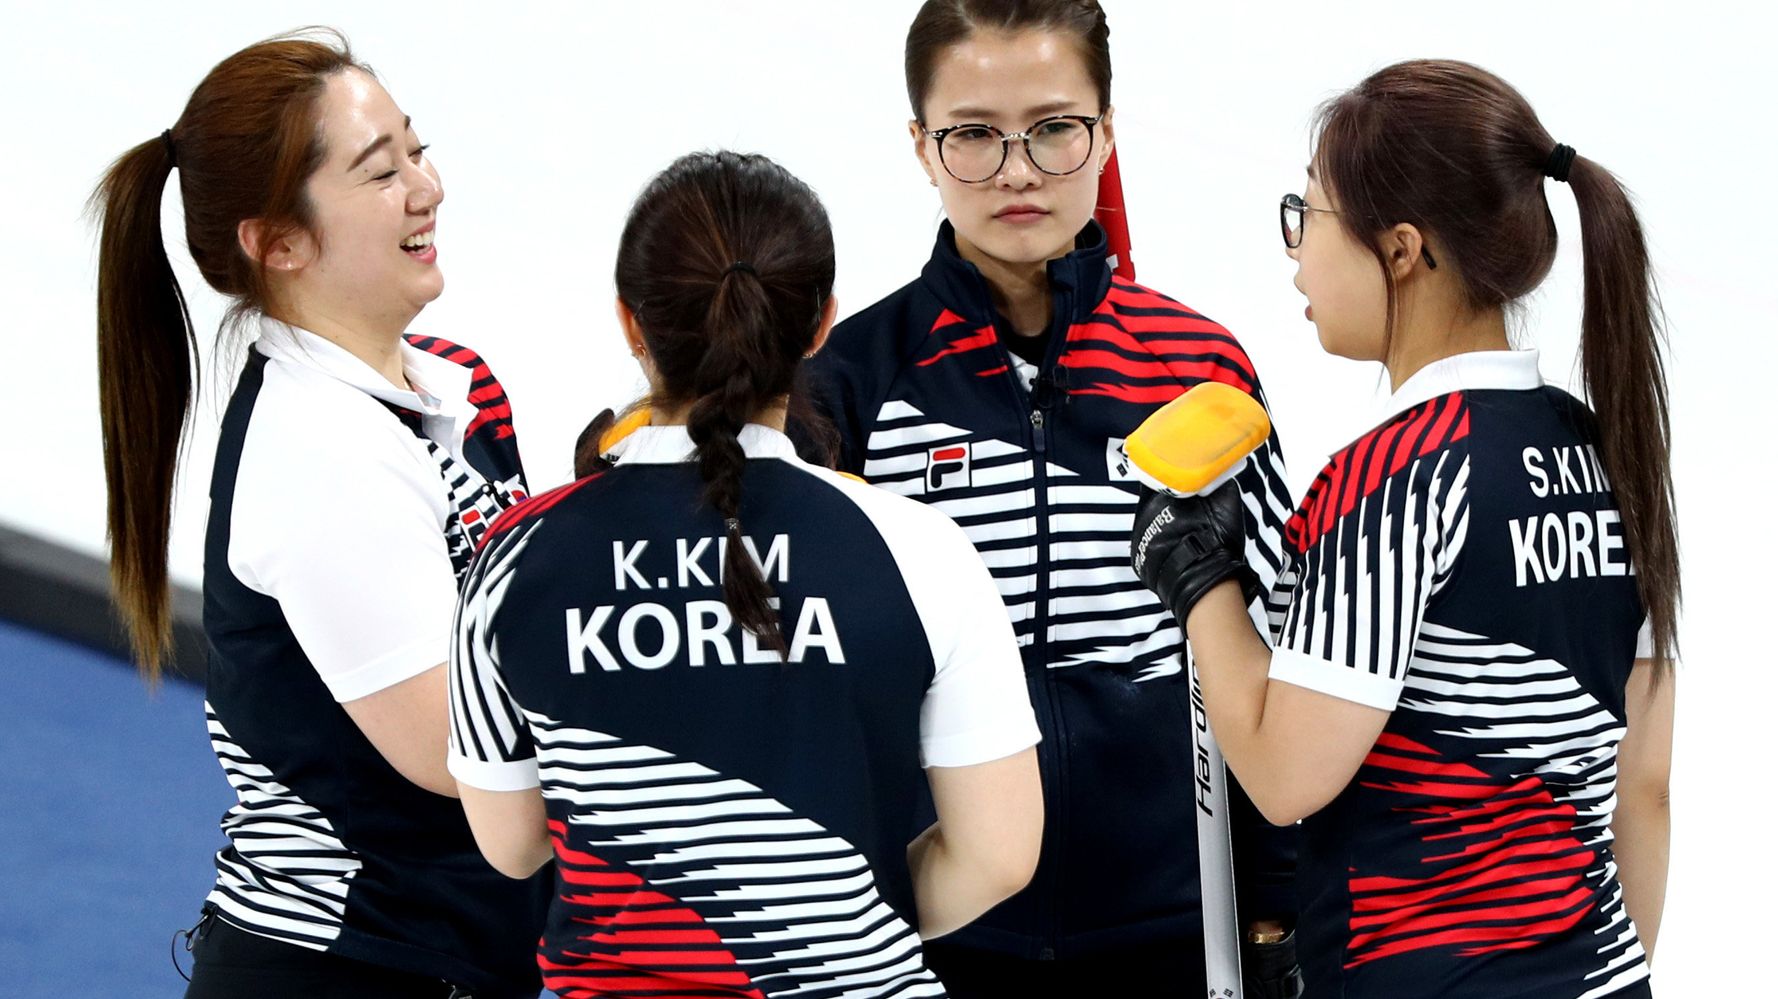 韓国カーリング女子チーム 全員同じ名字 混乱避けるための秘策が想像を超えていた ハフポスト